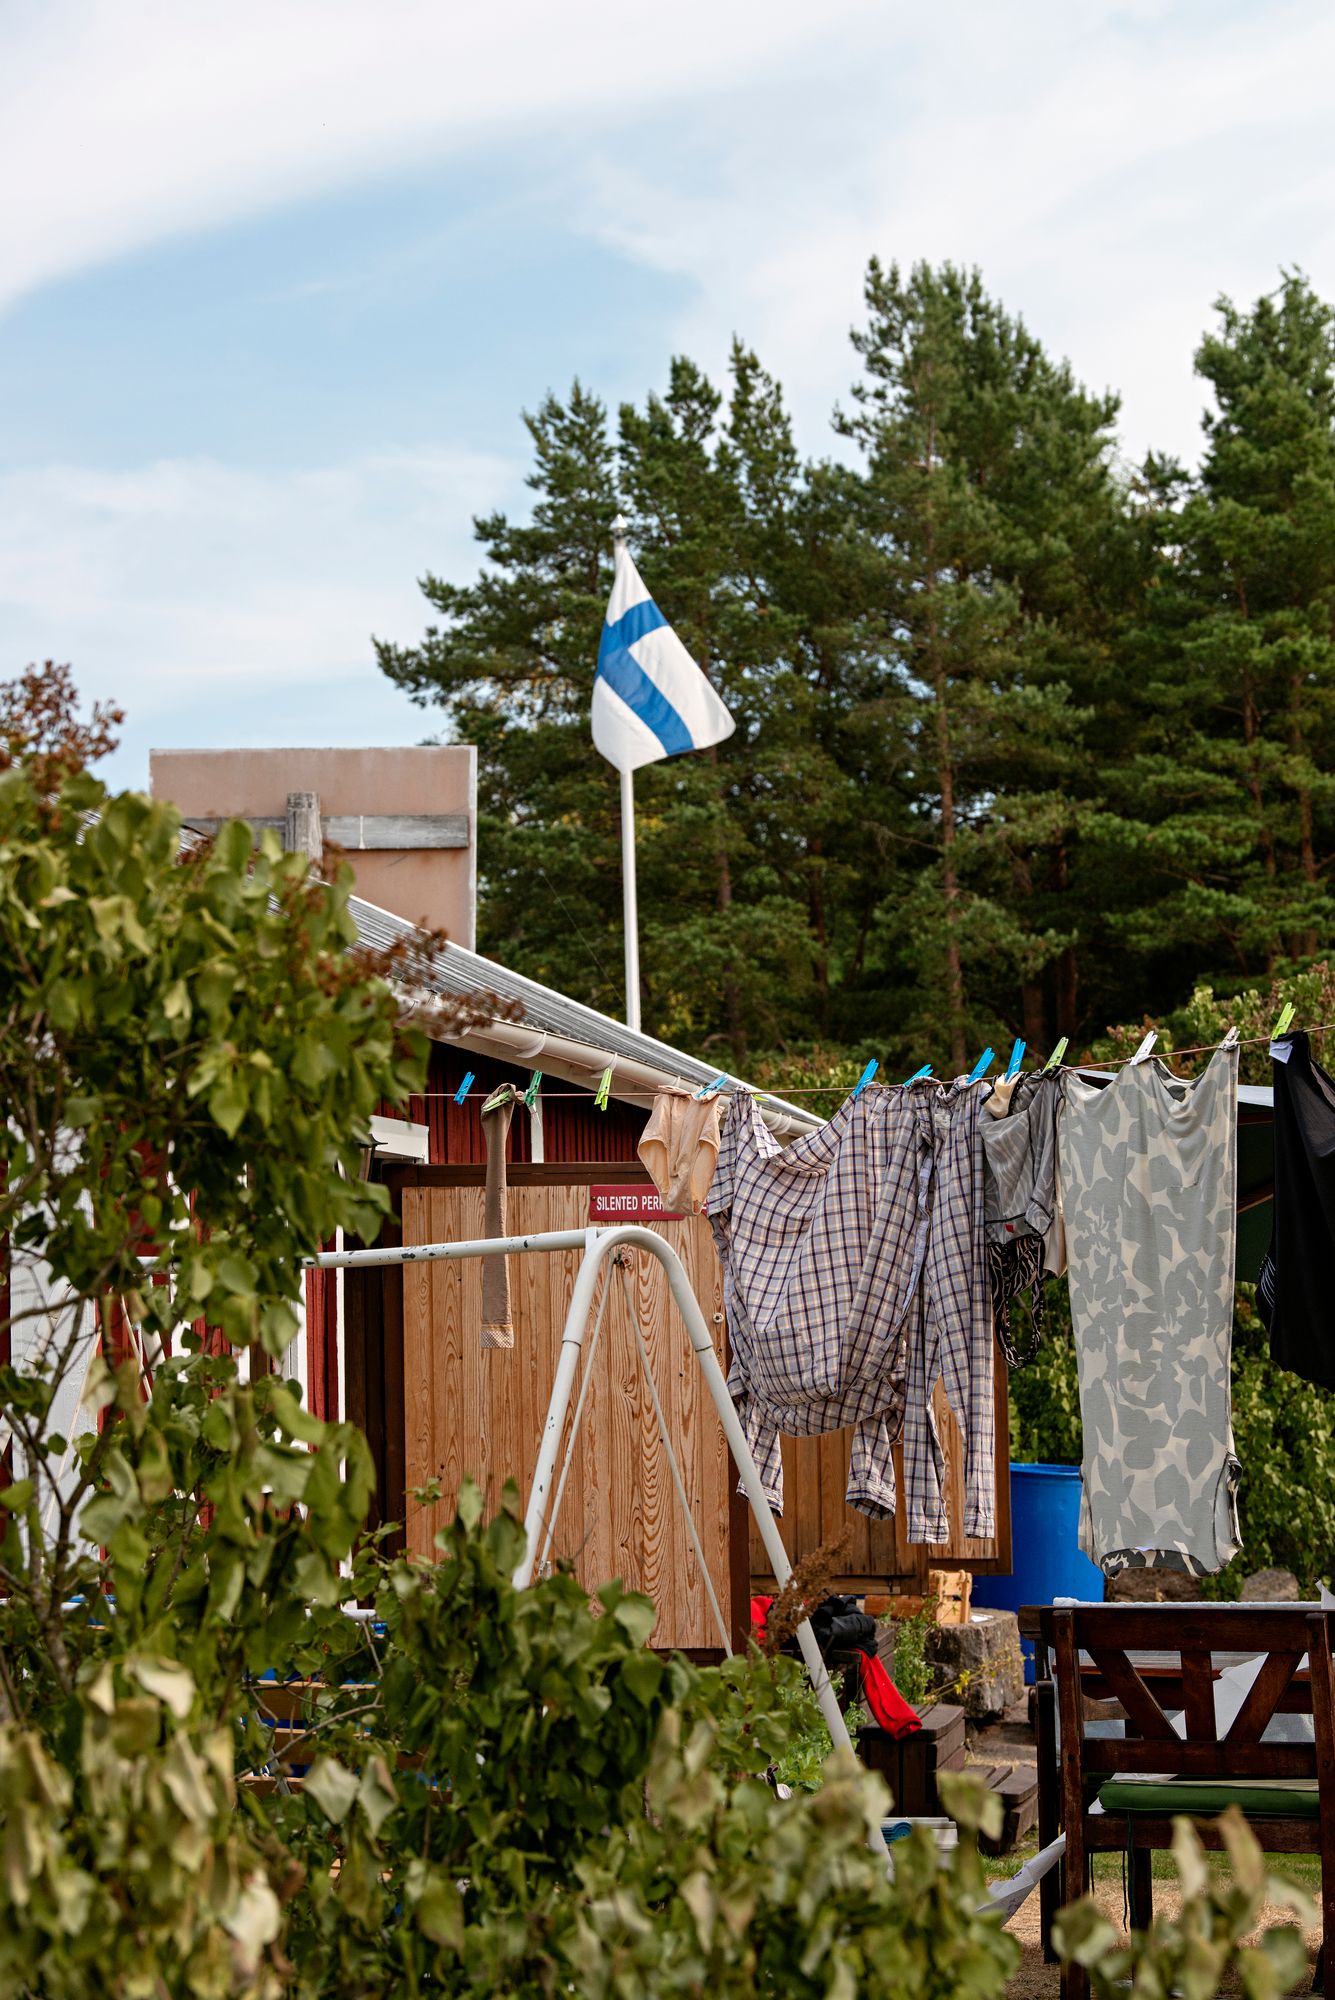 Moni pesee saaressa nyrkkipyykkiä. Pulsaattoripesukone on toinen vaihtoehto. © Linda Varoma